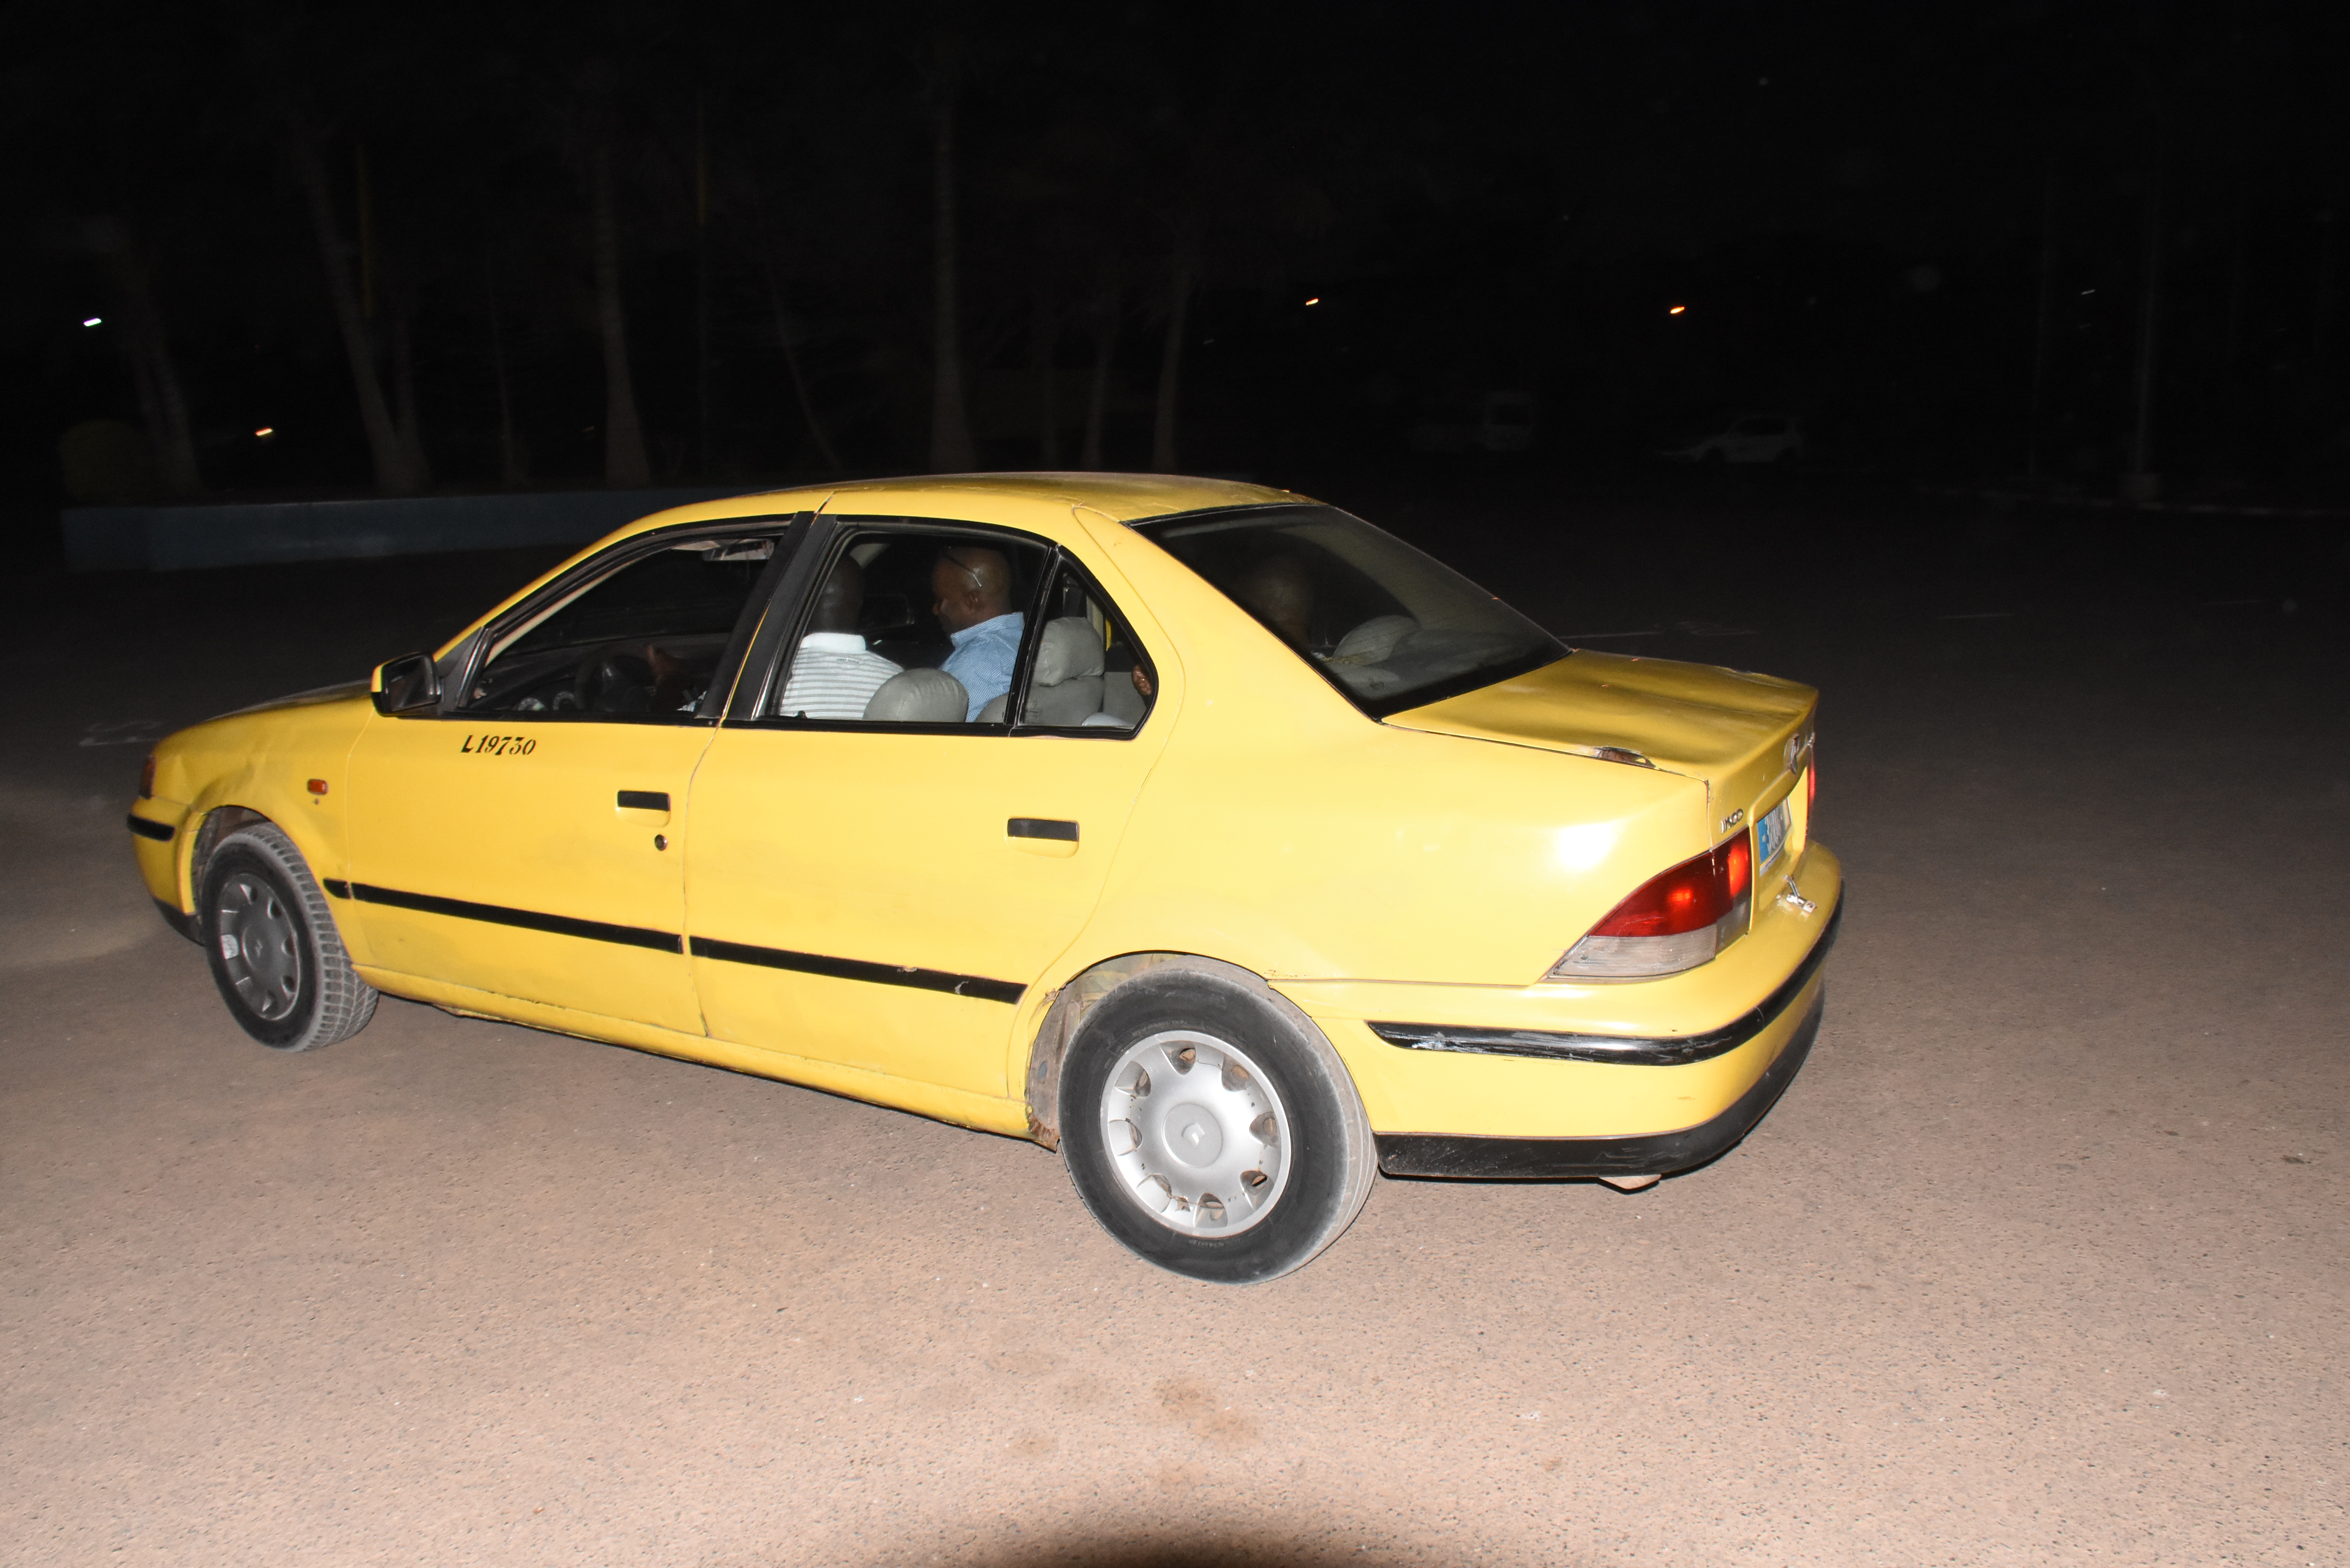 Leçon de modestie : le ministre malien des Sports vient au stade Léopold Sédar Senghor à bord d’un taxi